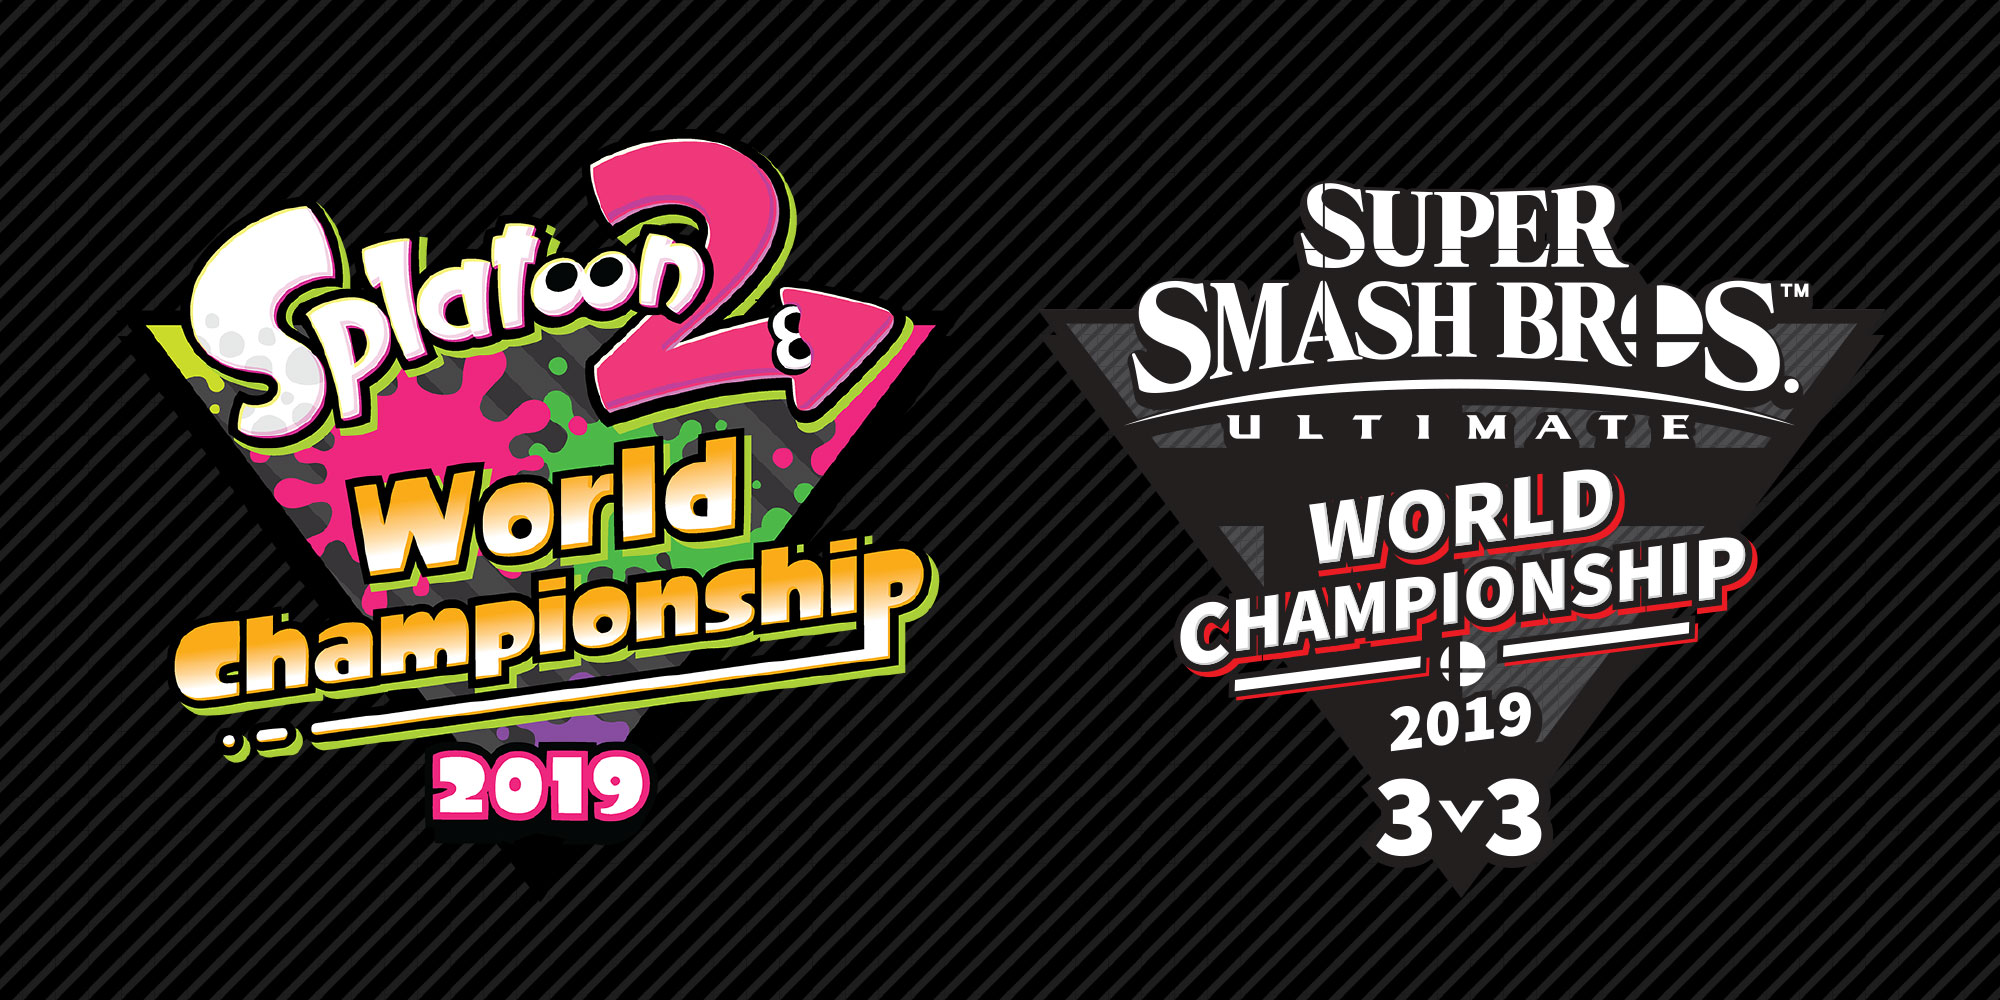 Incoronati i campioni del mondo di Splatoon 2 e Super Smash Bros. Ultimate ai tornei dell'E3 2019!